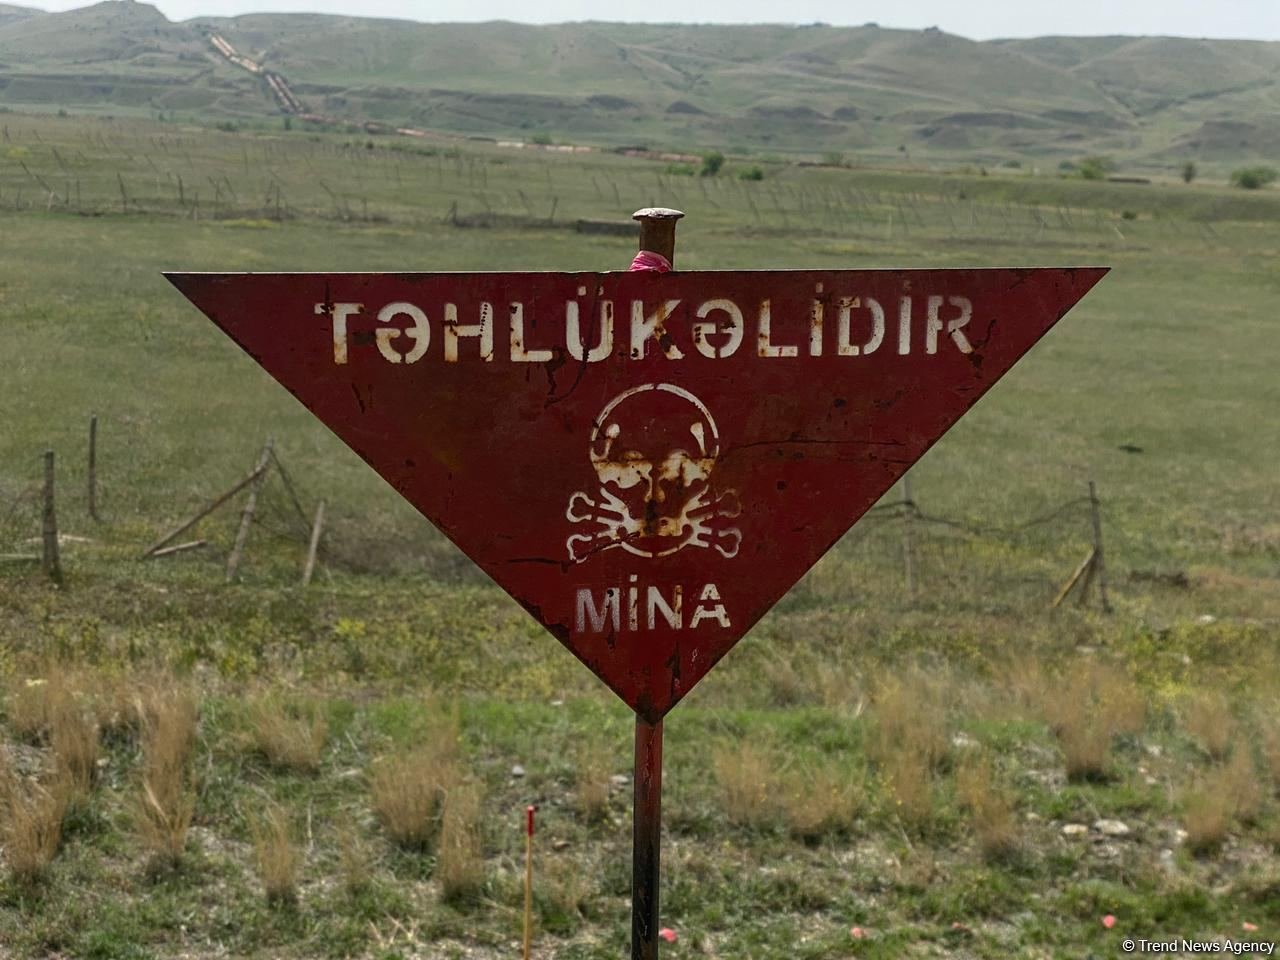 Mina terrorunun yaratdığı faciələr dünya icitmaiyyətinə təkrar çatdırılmalıdır - Türkiyəli general